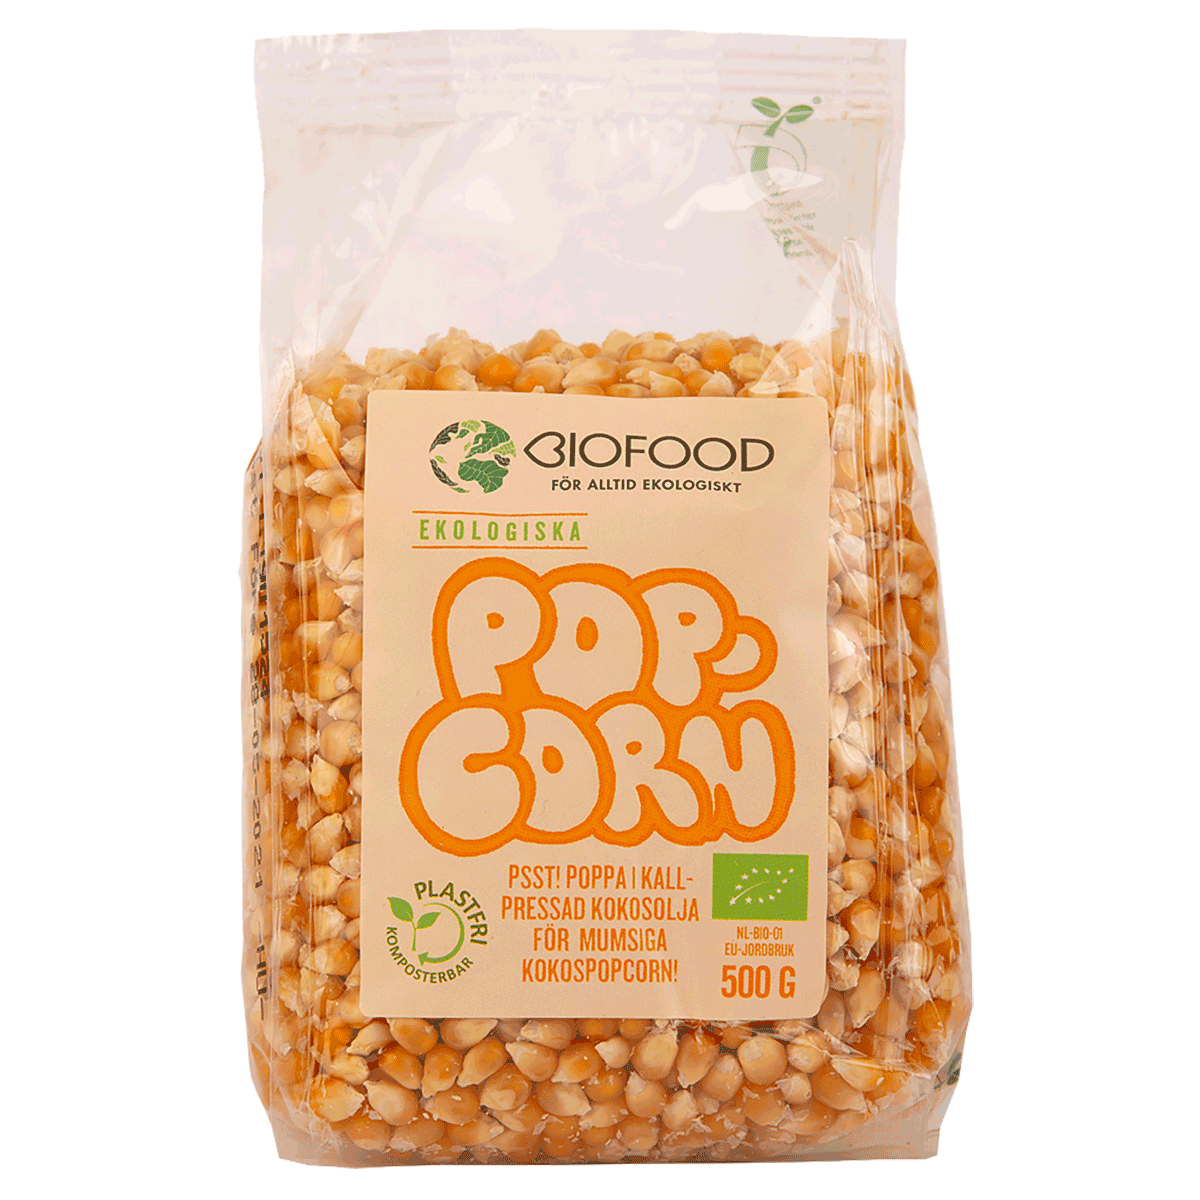 Biofood's Popcornkerne'